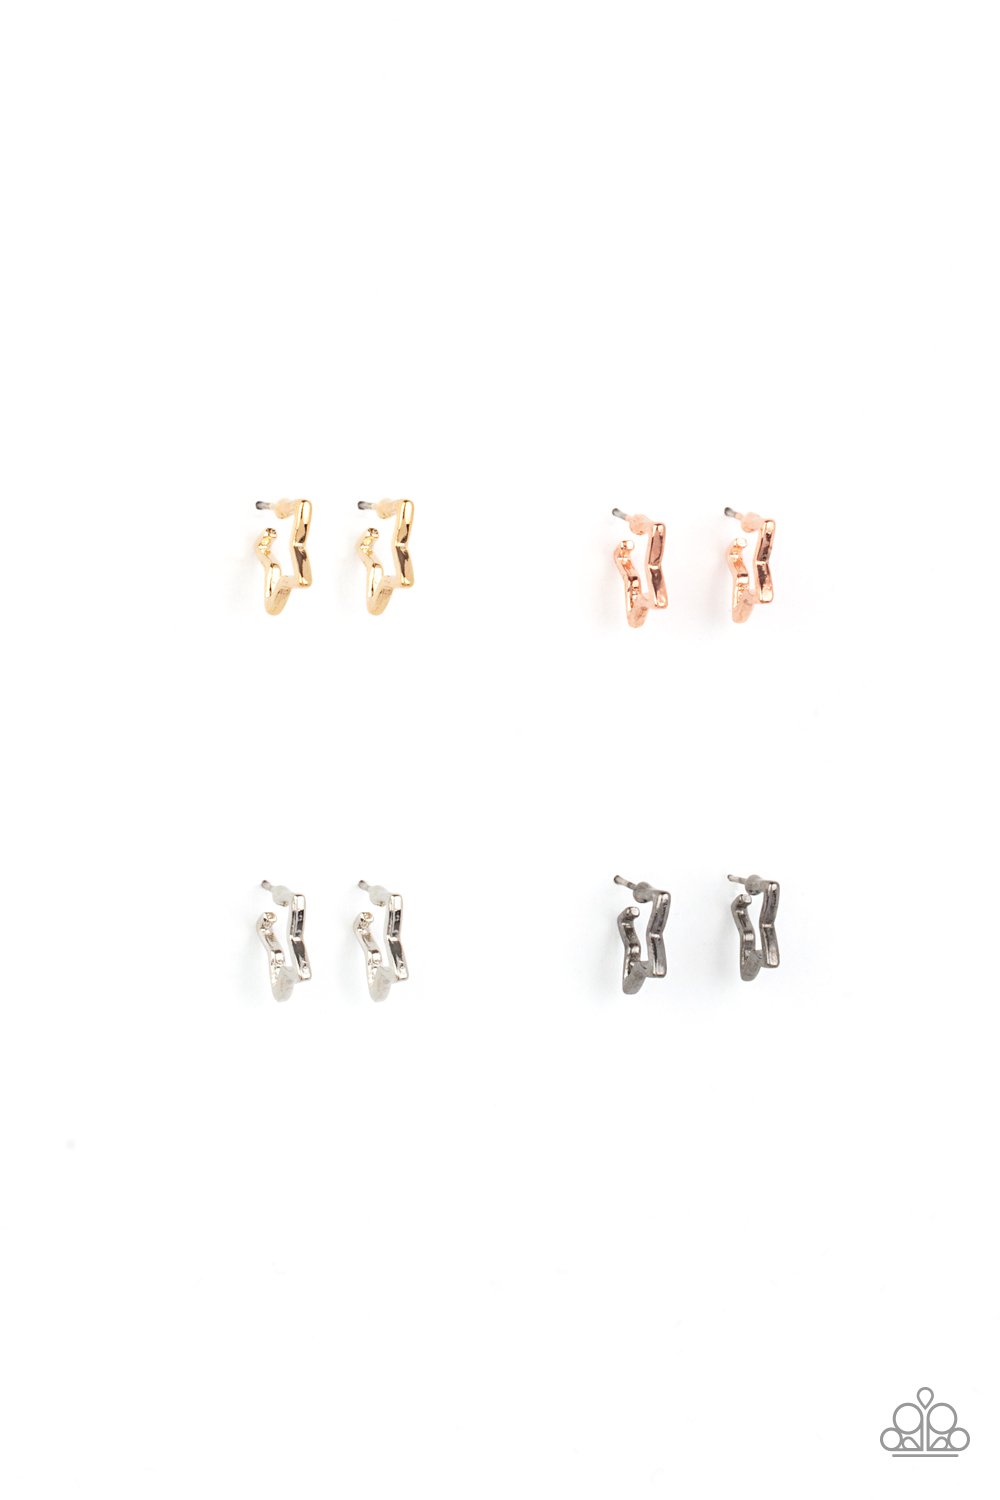 Starlet Shimmer Metal Star Hoop Earring Pack♥ Starlet Shimmer Earrings♥ Paparazzi ♥